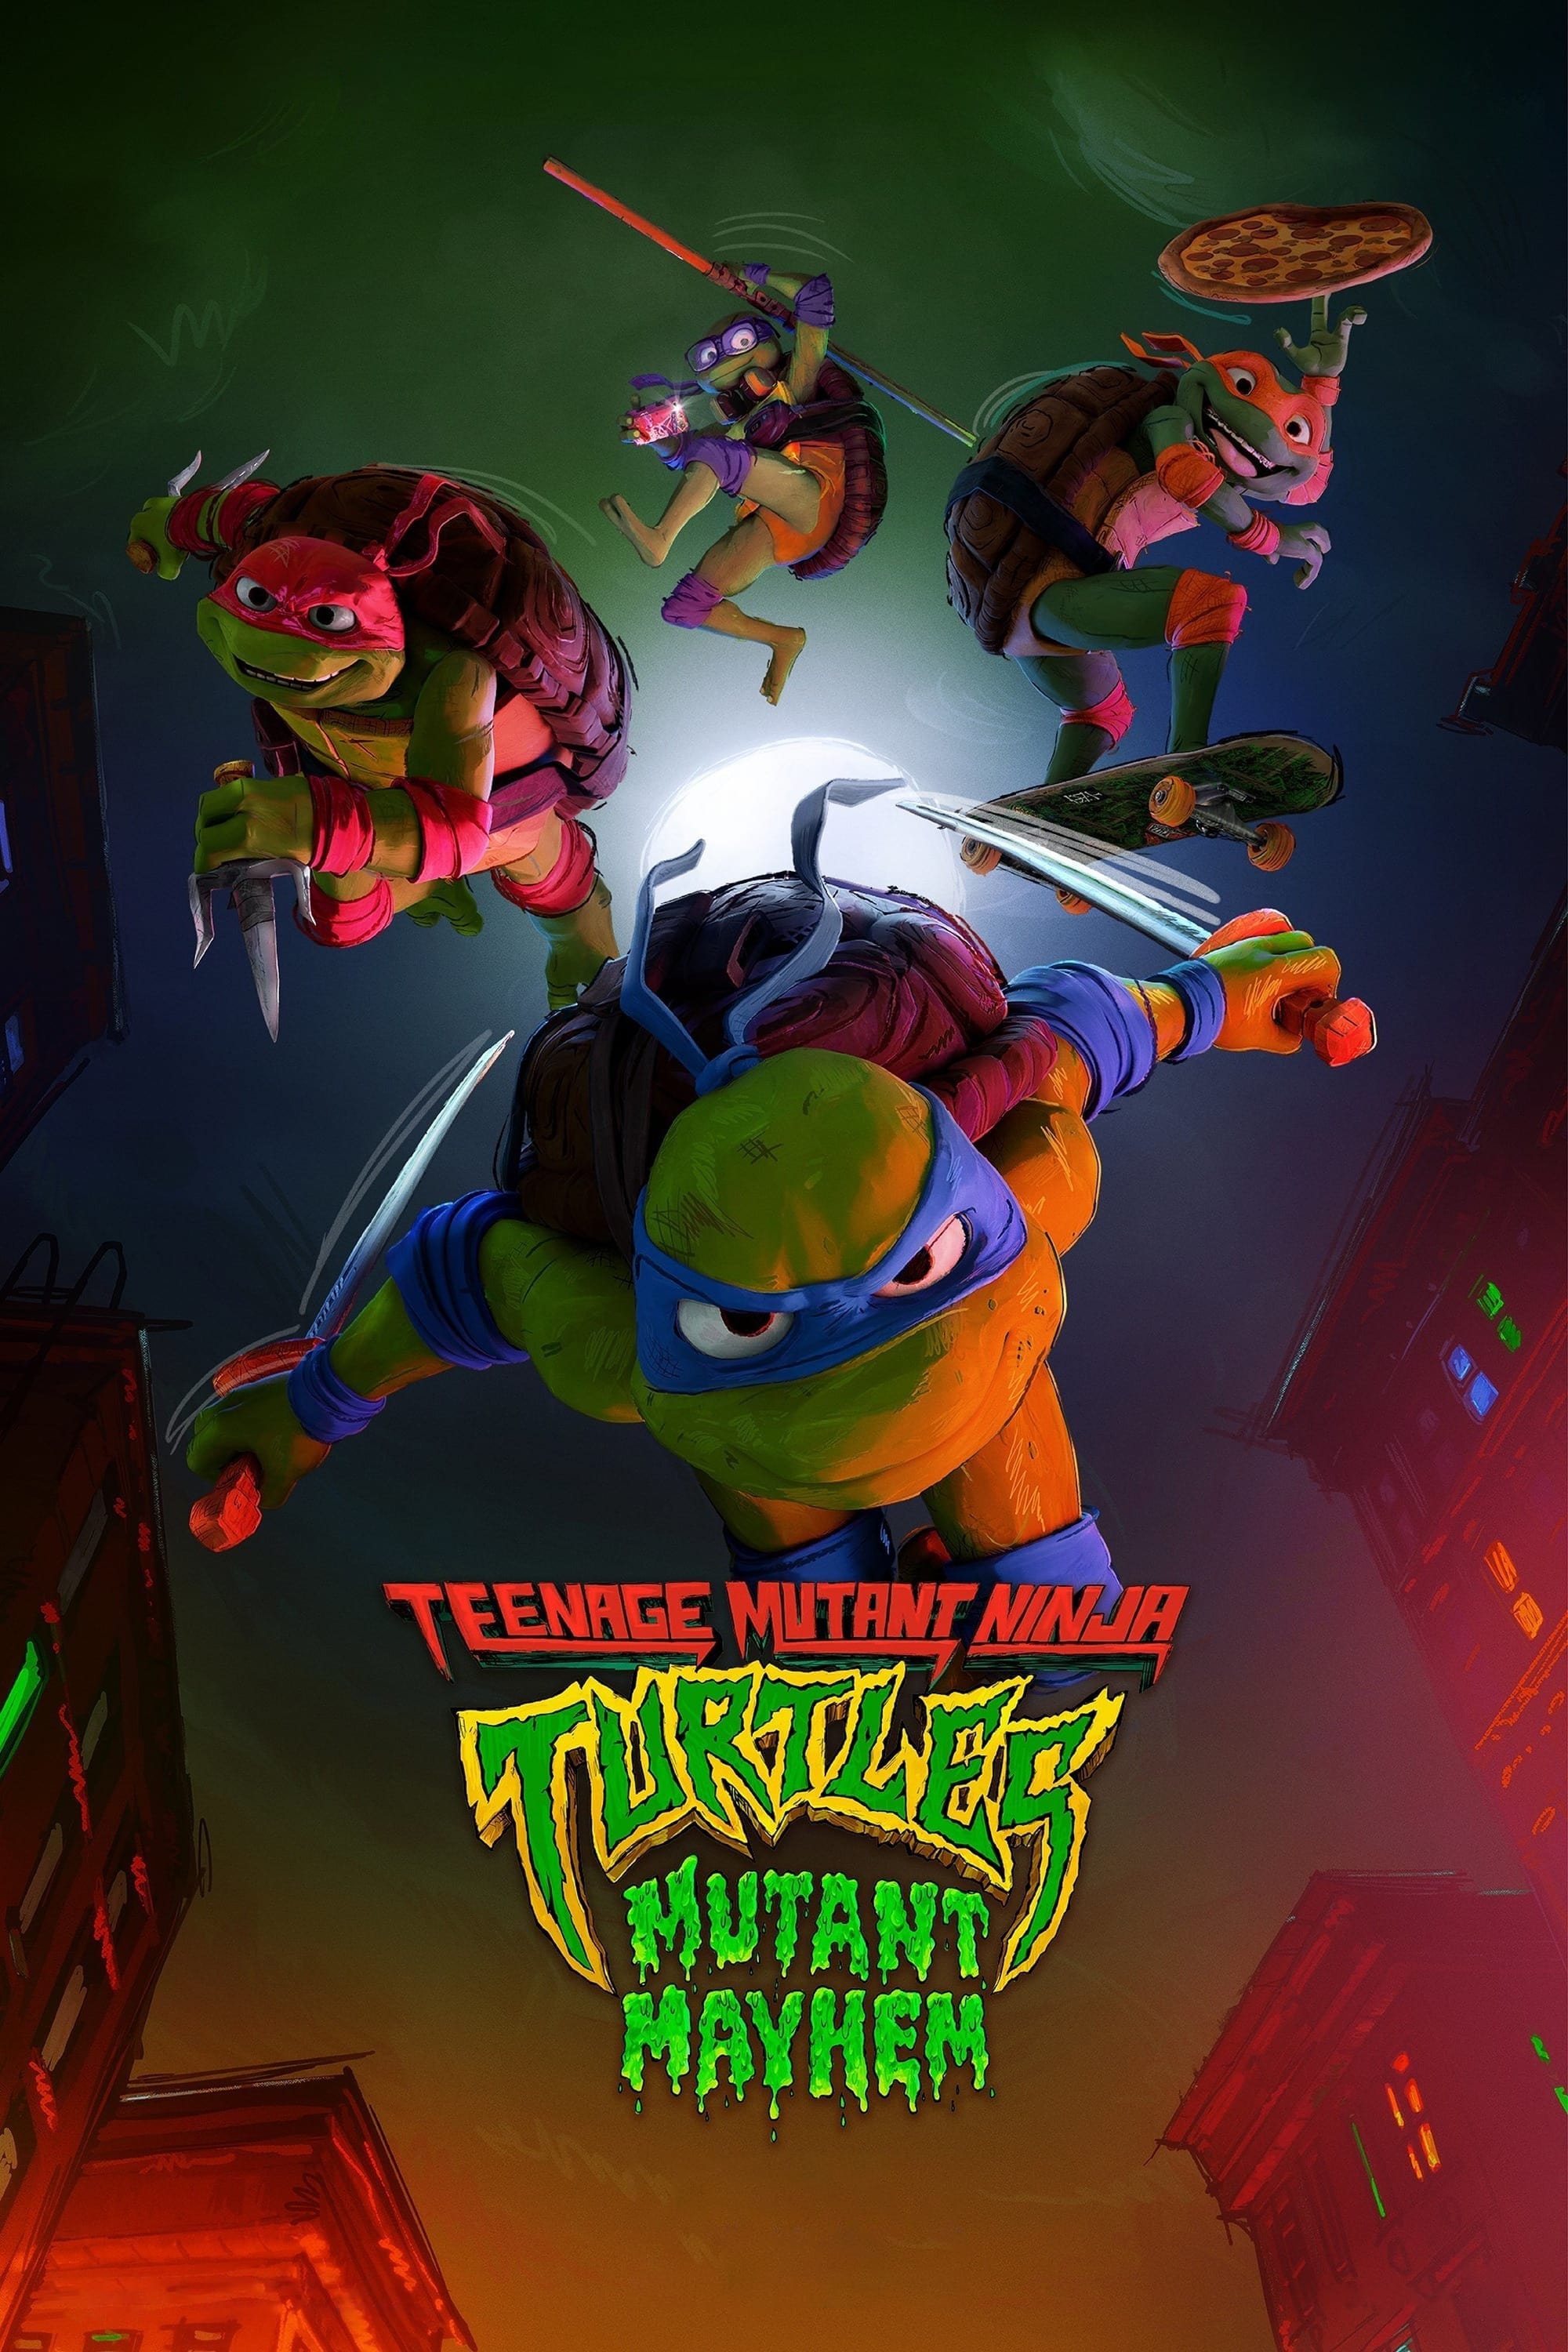 Teenage Mutant Ninja Turtles Mutant Mayhem